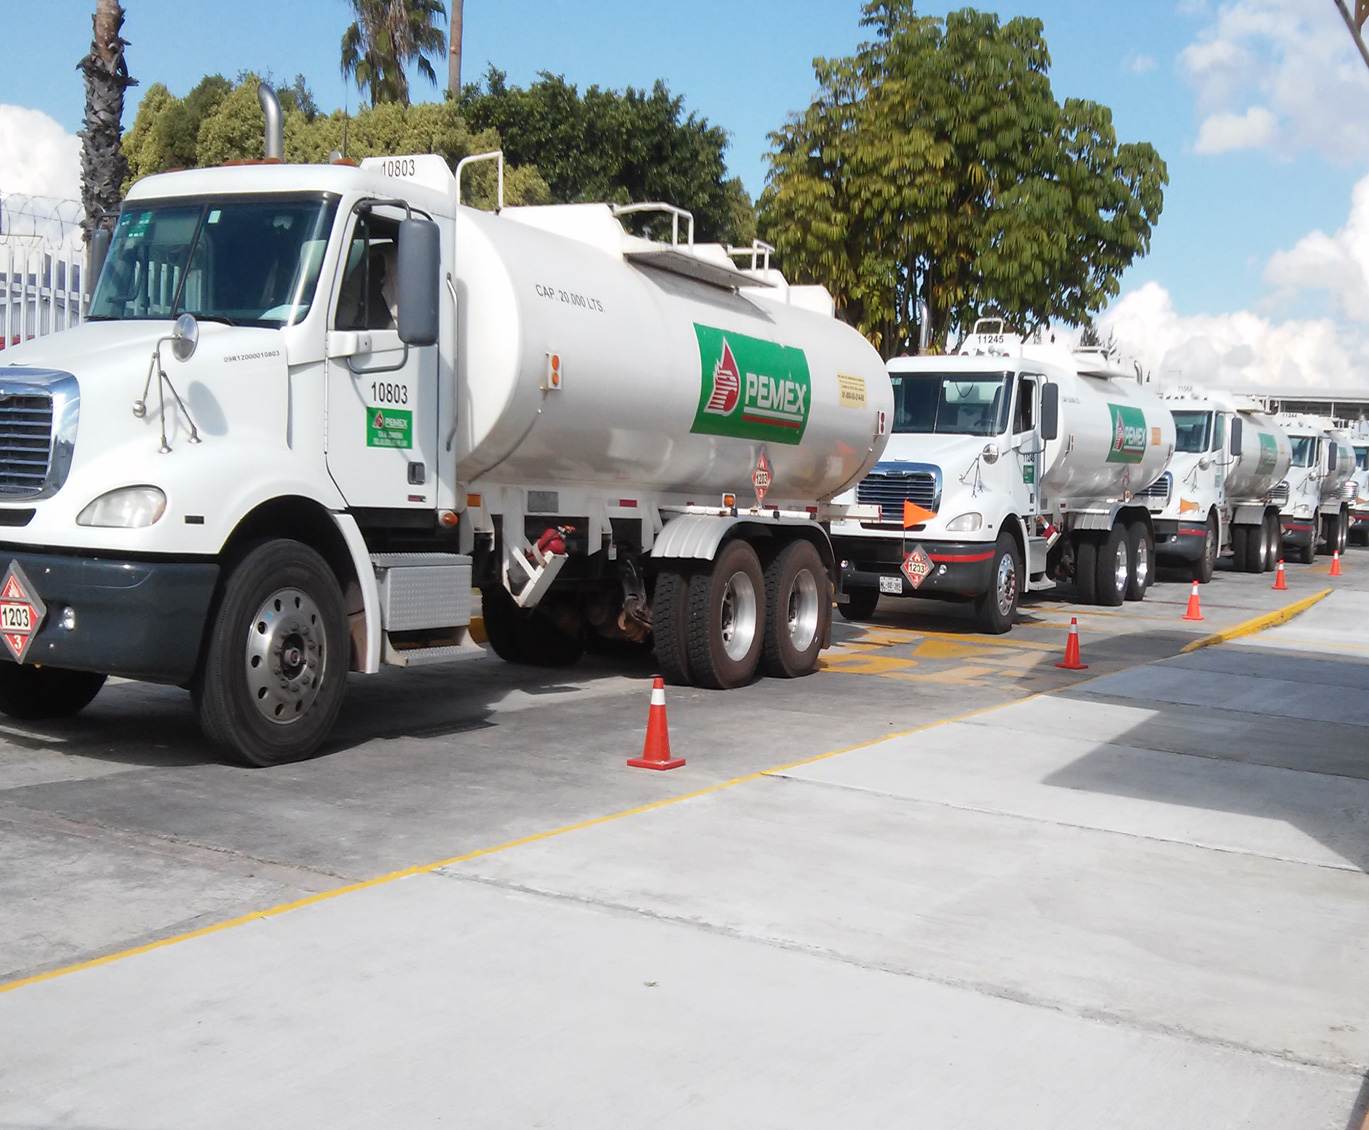  Pemex atiende desabasto de gasolina en SLP; se distribuyen hoy 3,6 millones de litros